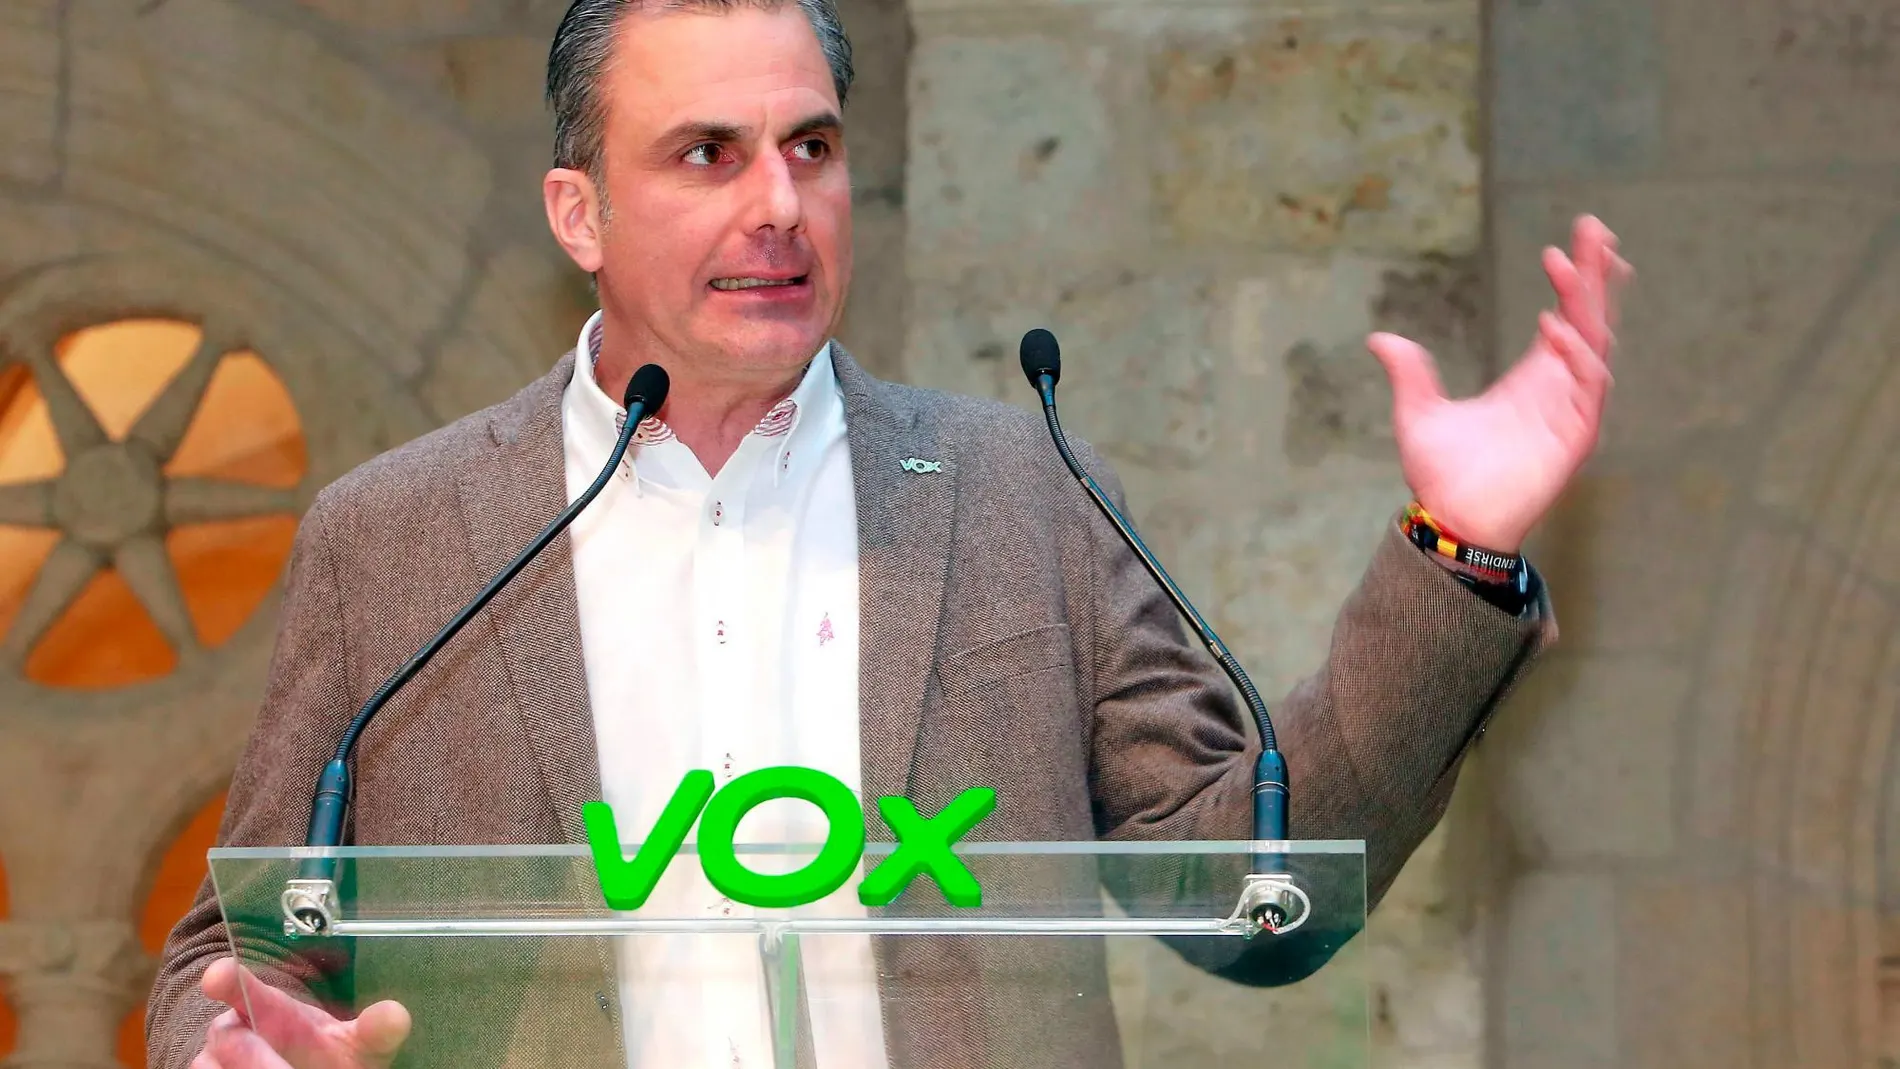 El secretario general de Vox, Javier Ortega Smith, participa en un acto público de su partido en Burgos